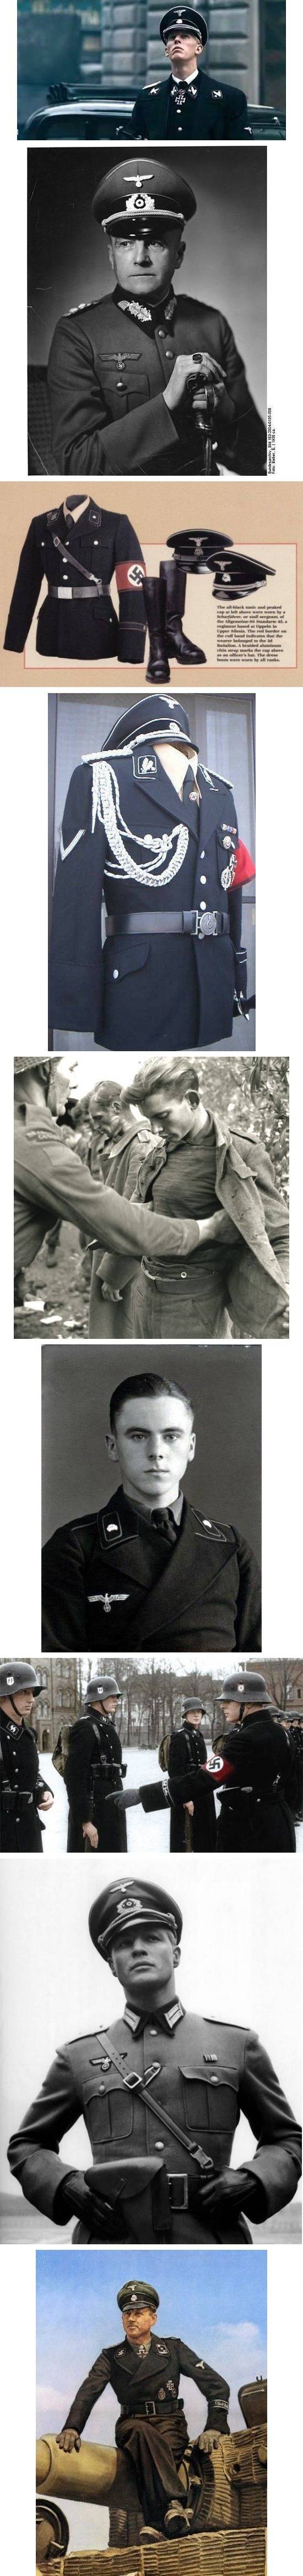 젊은이들을 군에 입대시키기 위해 만든 나치 제복.jpg | 인스티즈